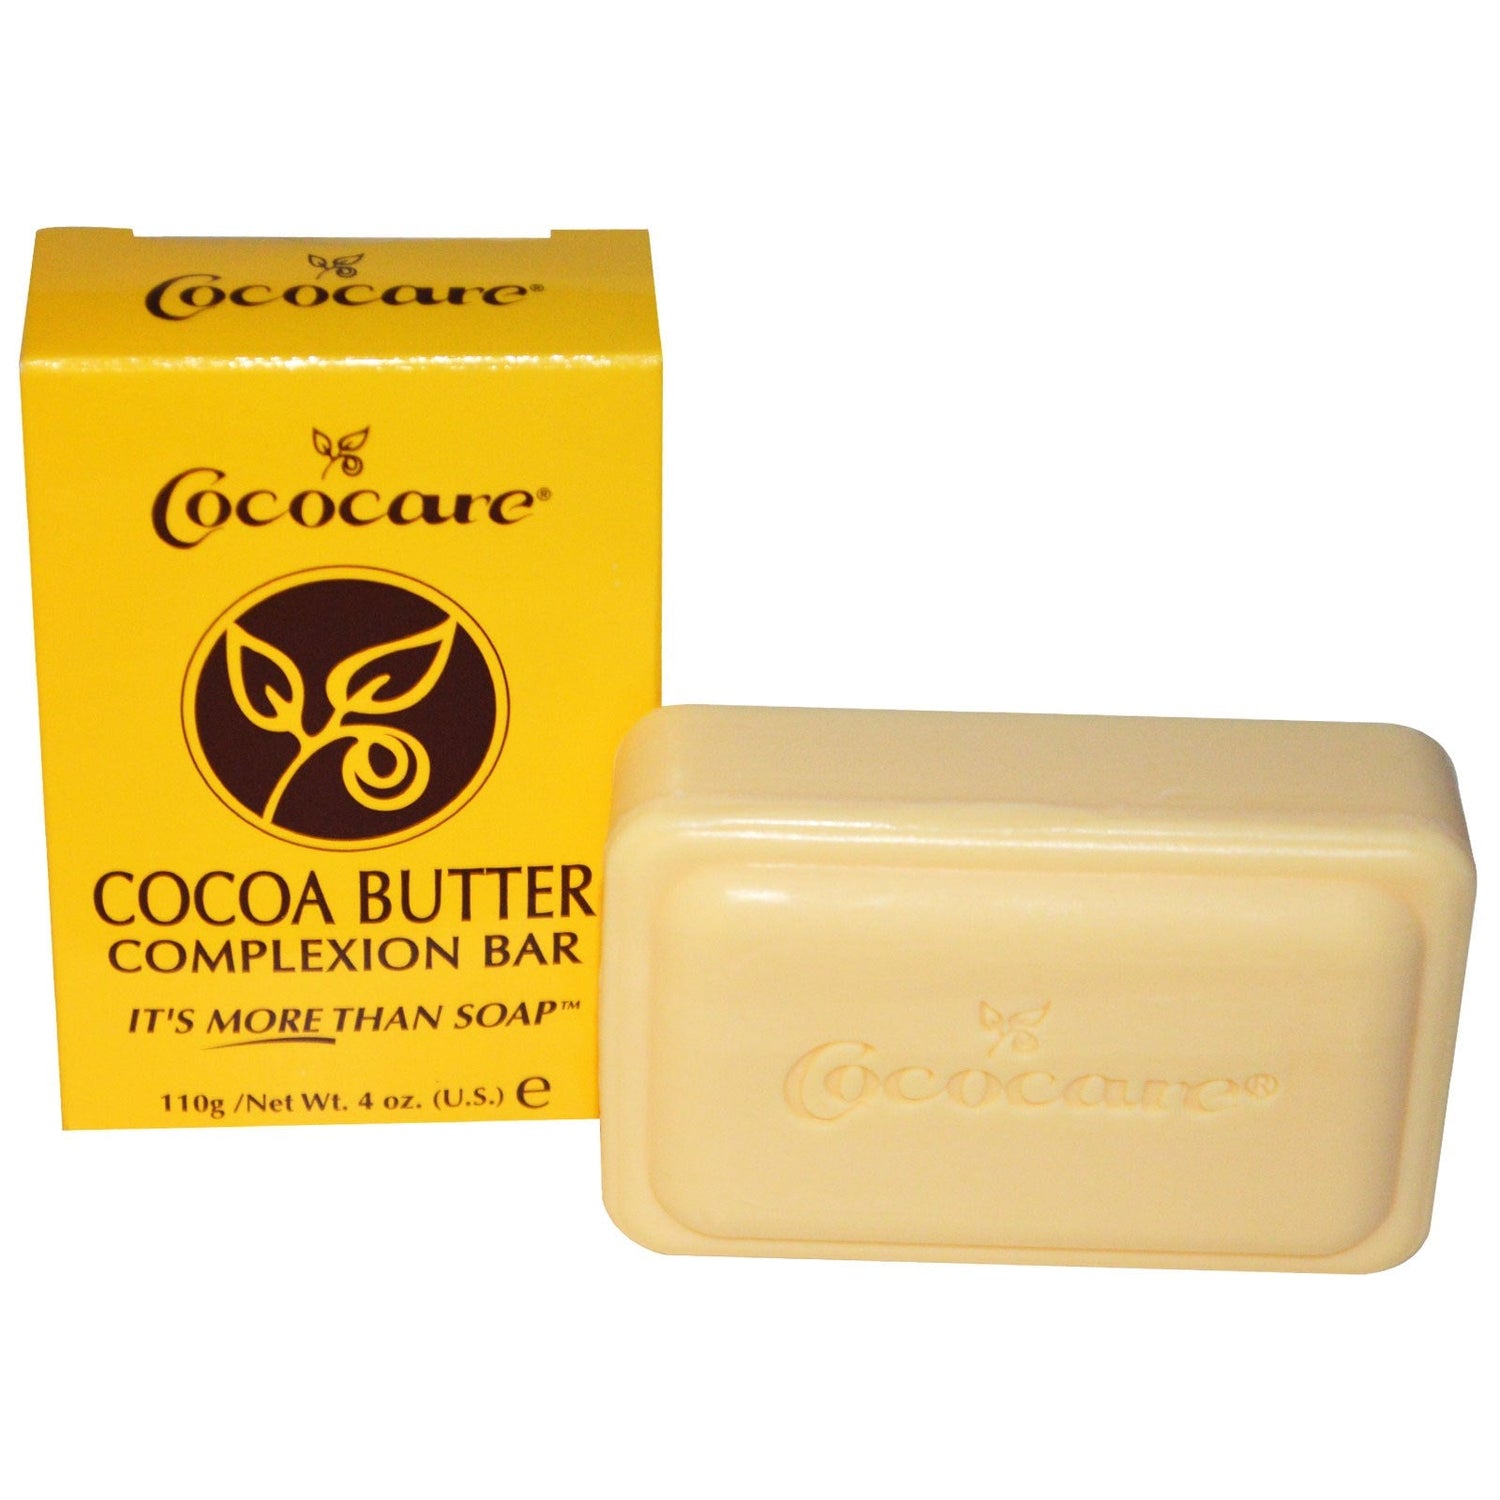 Cococare Cocoa Butter Complexion Bar 110g